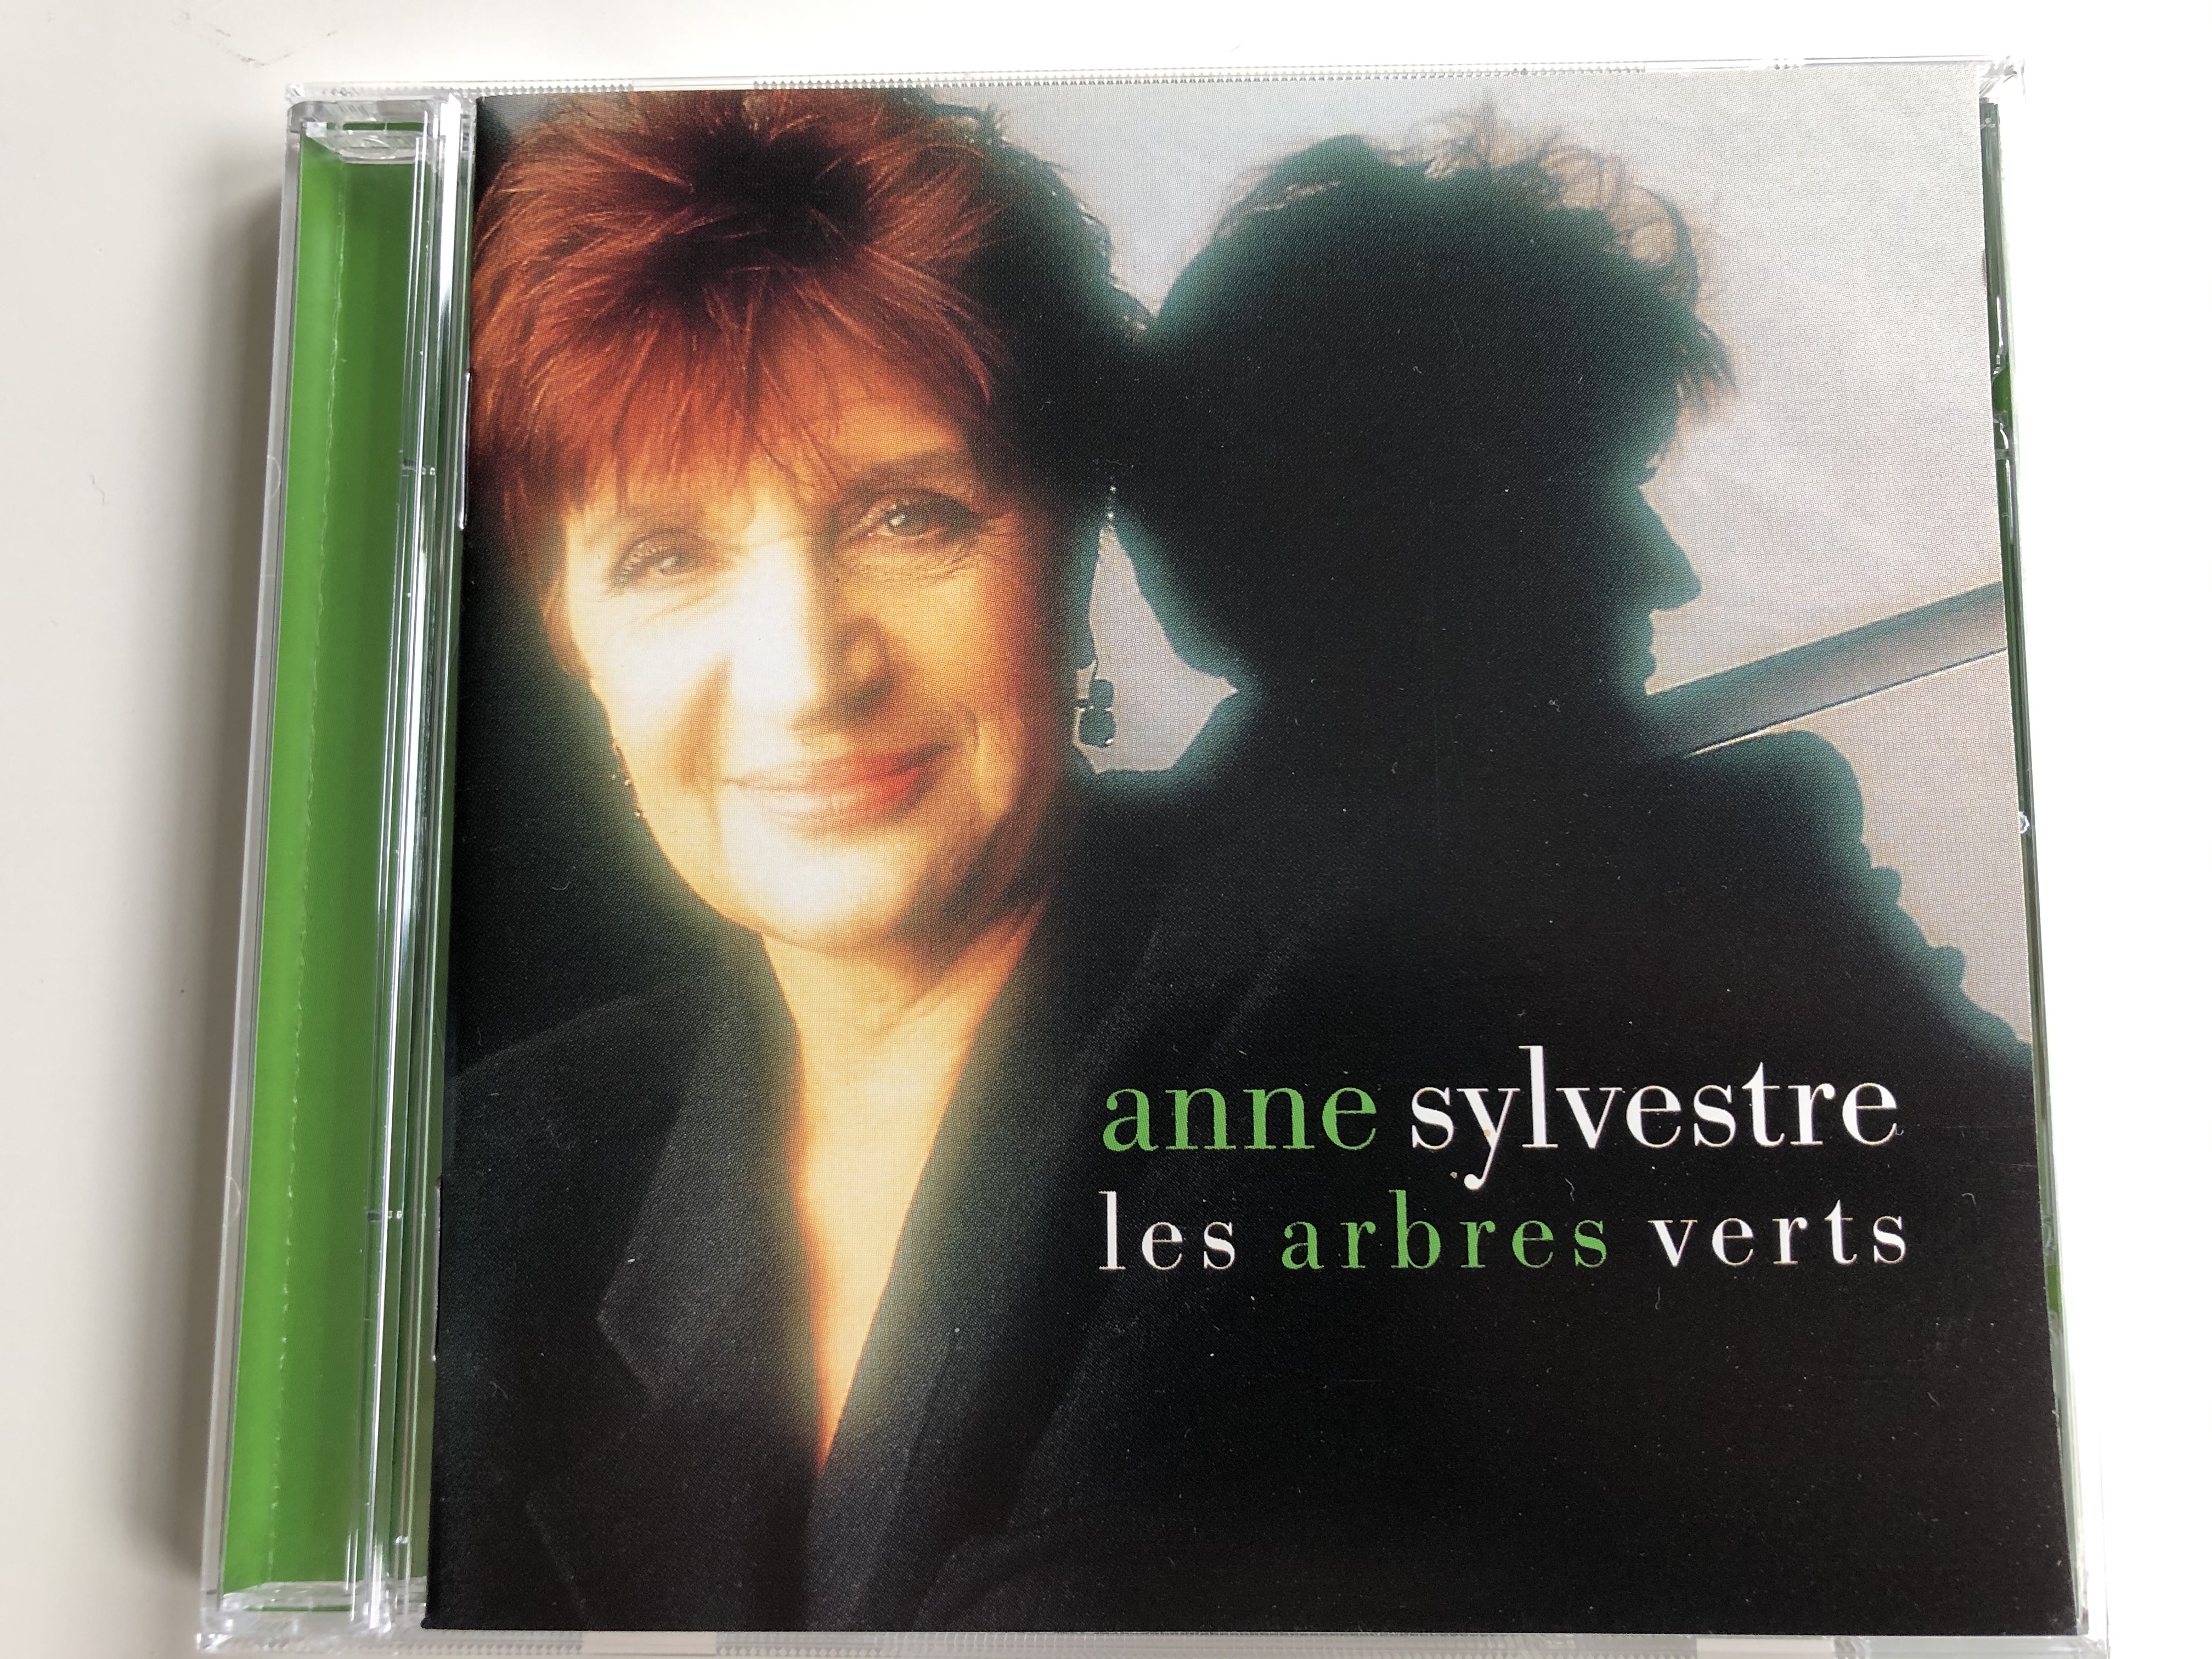 anne-sylvestre-les-arbres-verts-epm-musique-audio-cd-1998-984432-1-.jpg